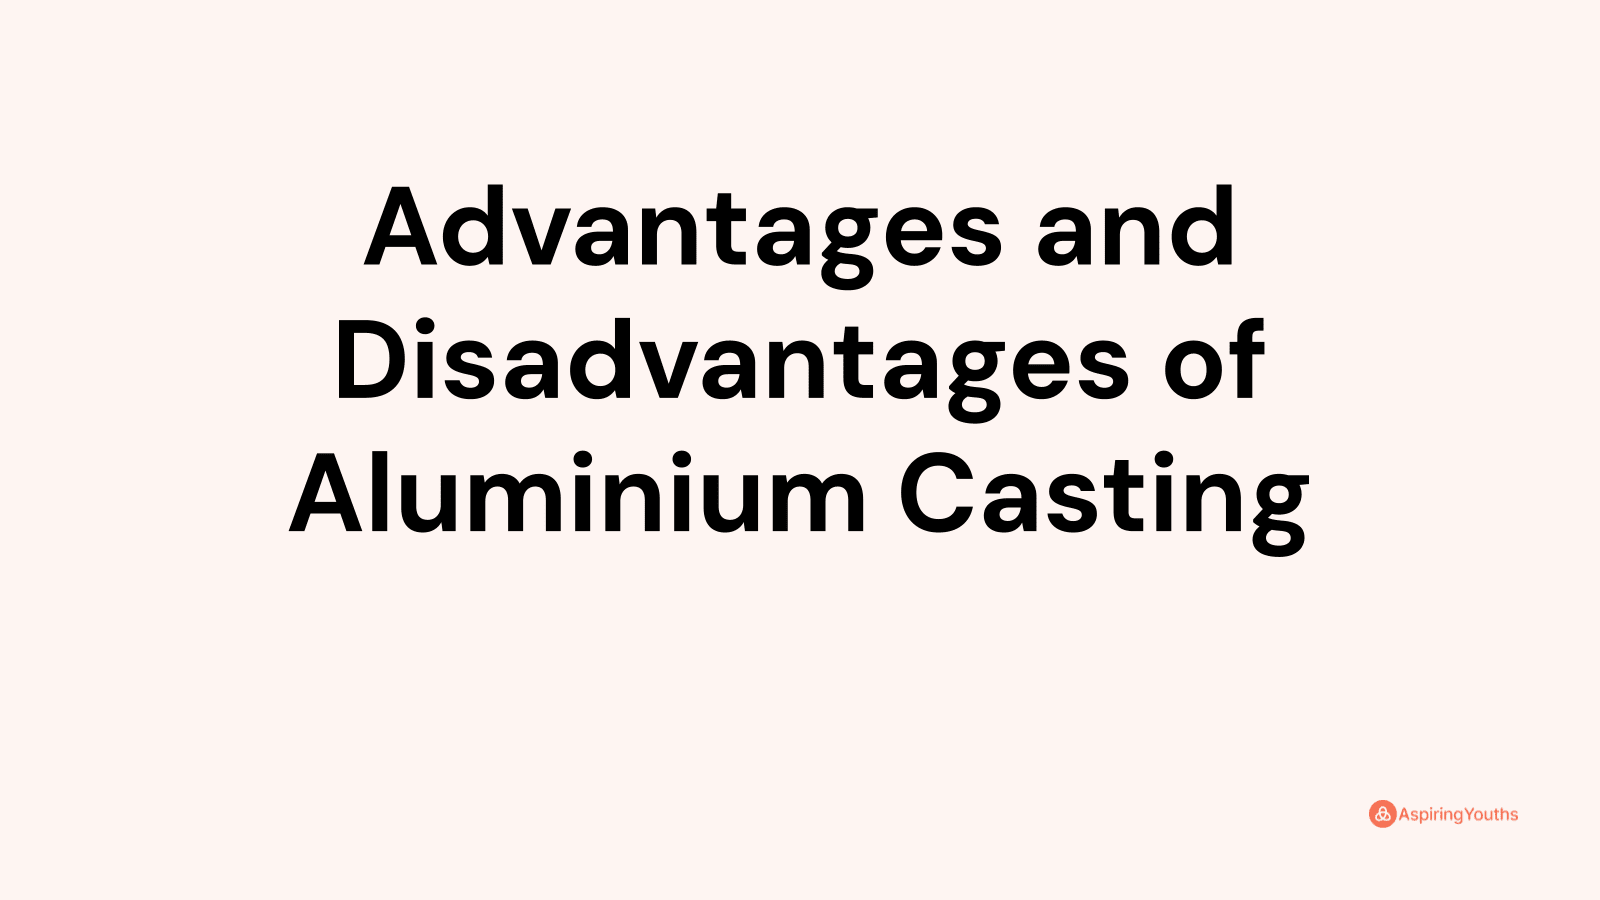 Advantages and disadvantages of Aluminium Casting